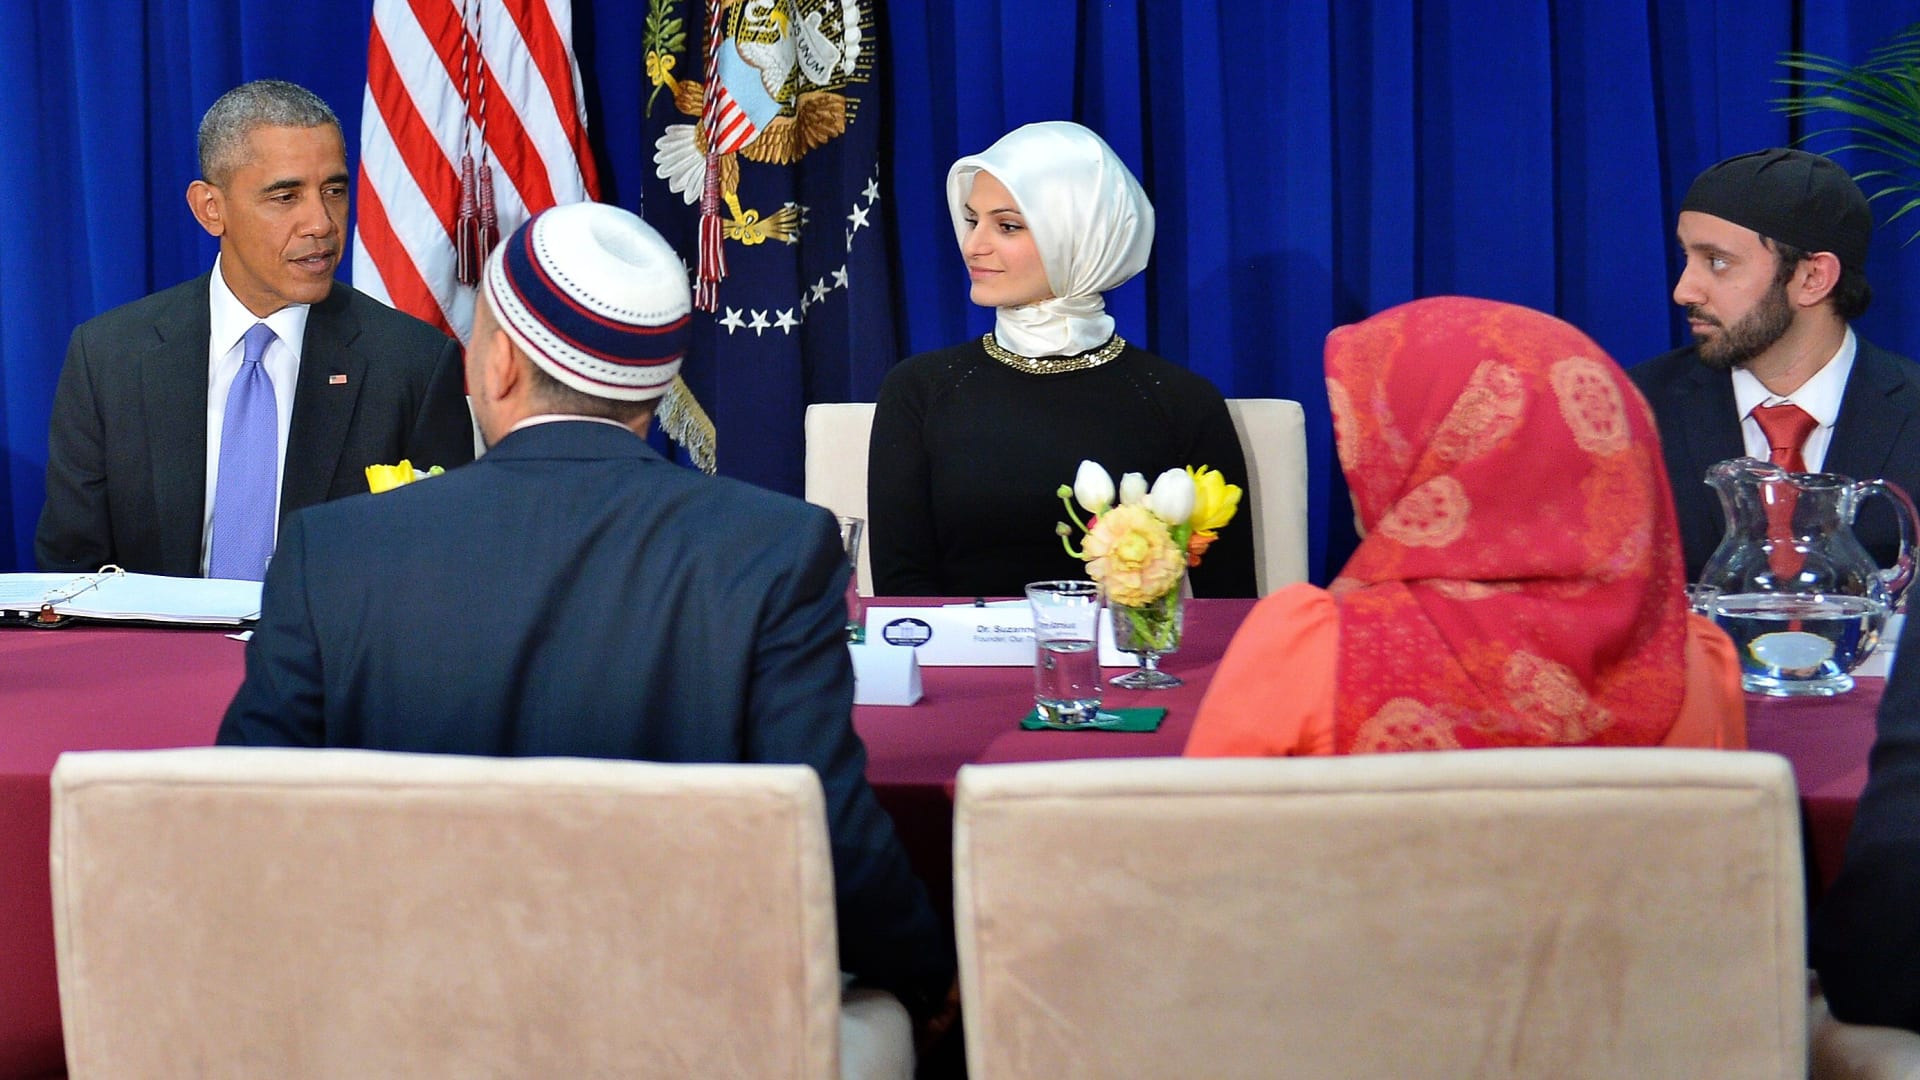 بالصور.. أوباما في مسجد أمريكي لأول مرة: استهداف الإسلام هو استهداف لكل الأديان